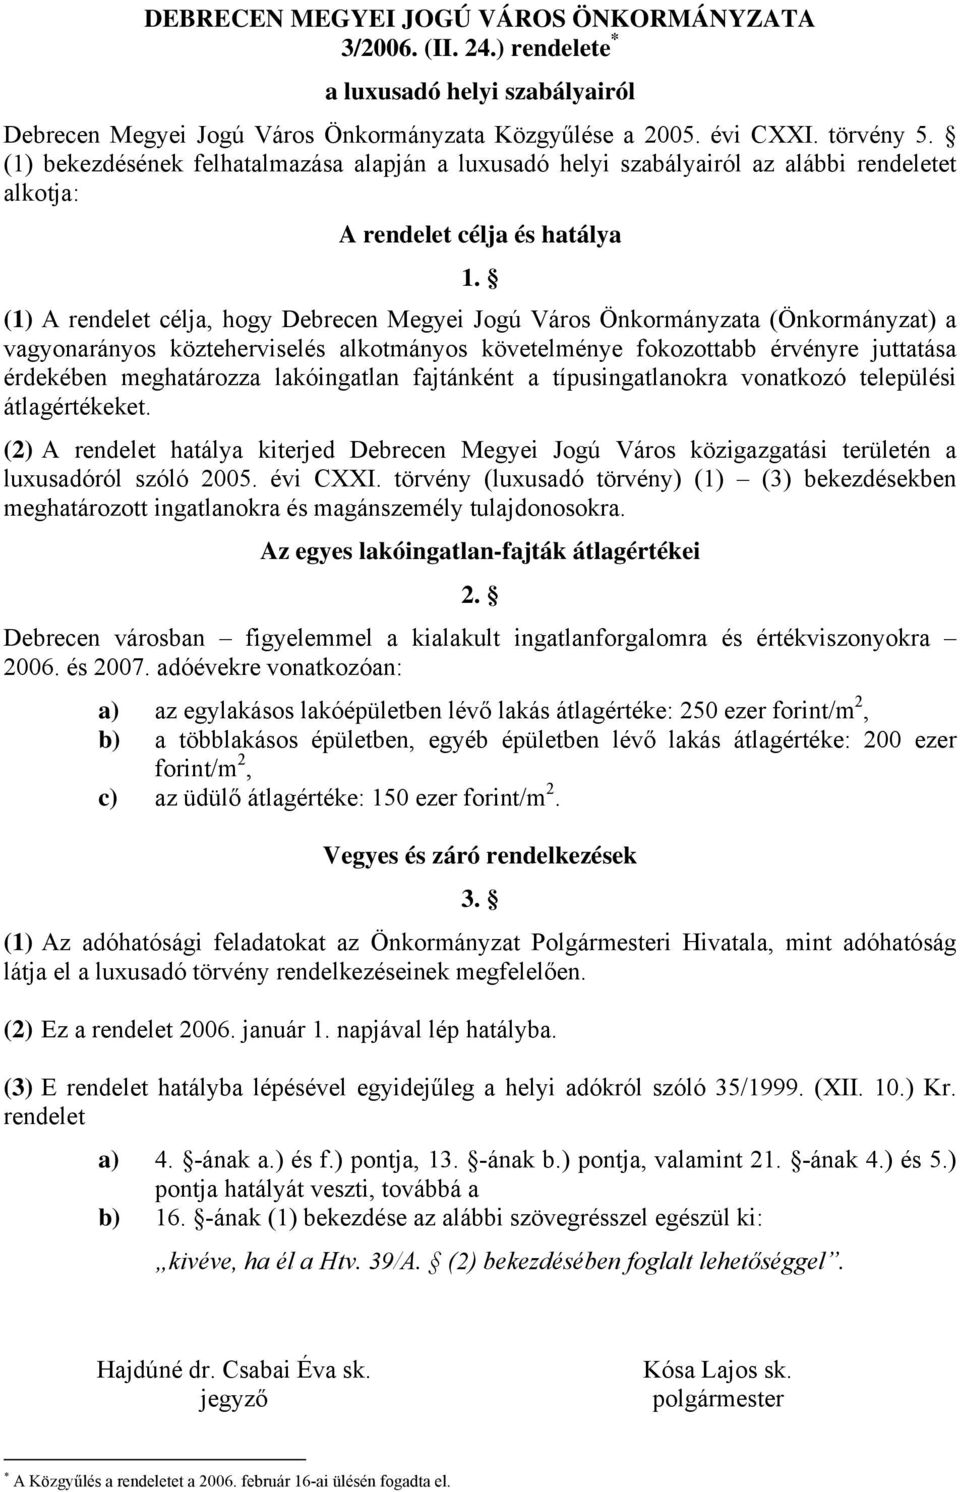 (1) A rendelet célja, hogy Debrecen Megyei Jogú Város Önkormányzata (Önkormányzat) a vagyonarányos közteherviselés alkotmányos követelménye fokozottabb érvényre juttatása érdekében meghatározza